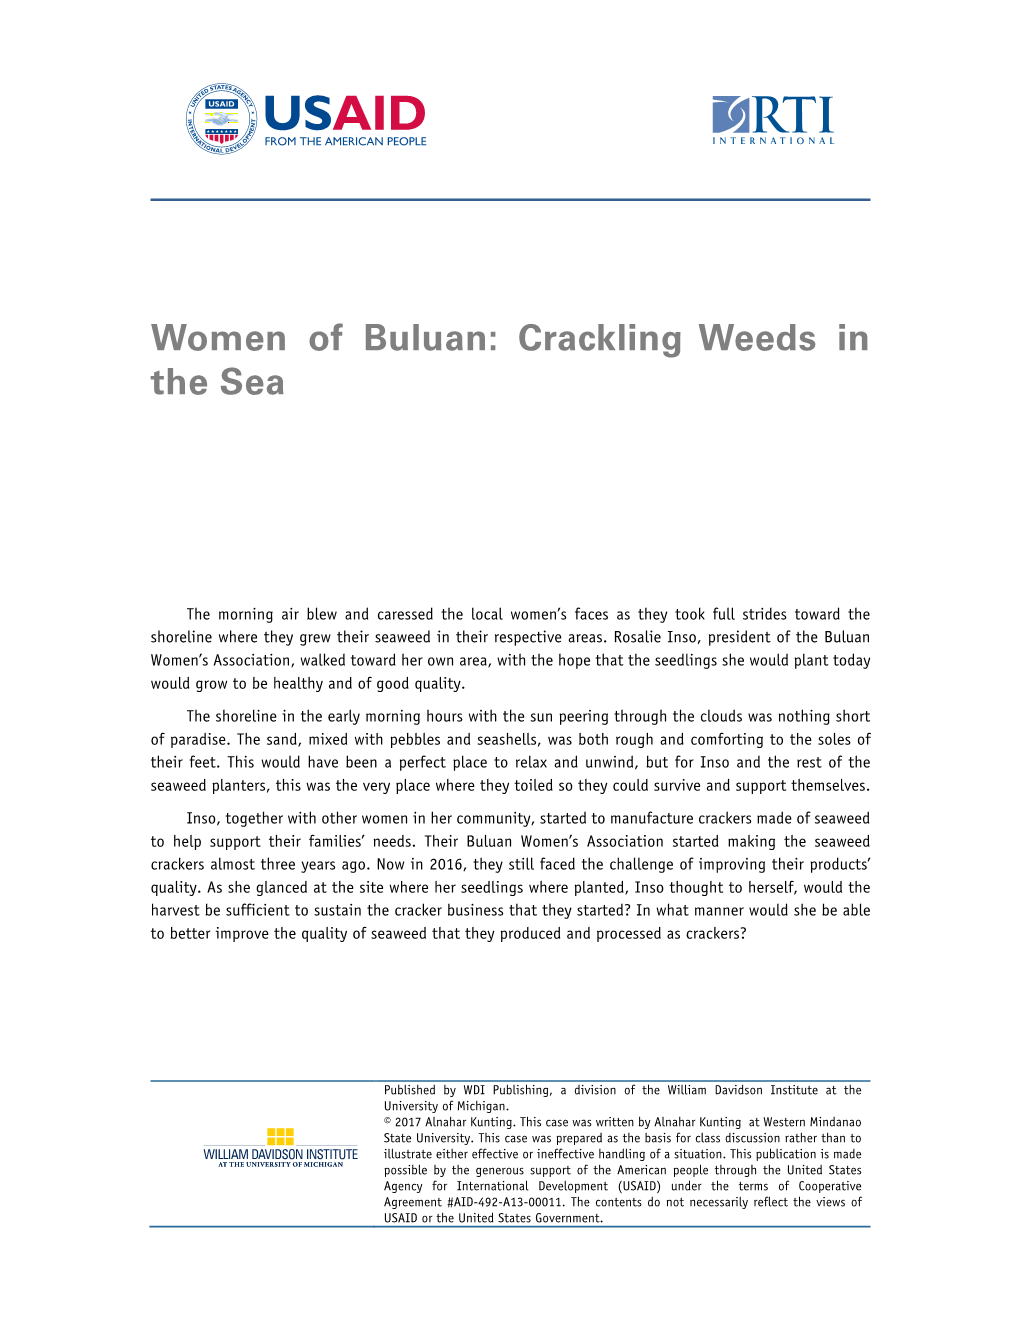 Women of Buluan: Crackling Weeds in the Sea